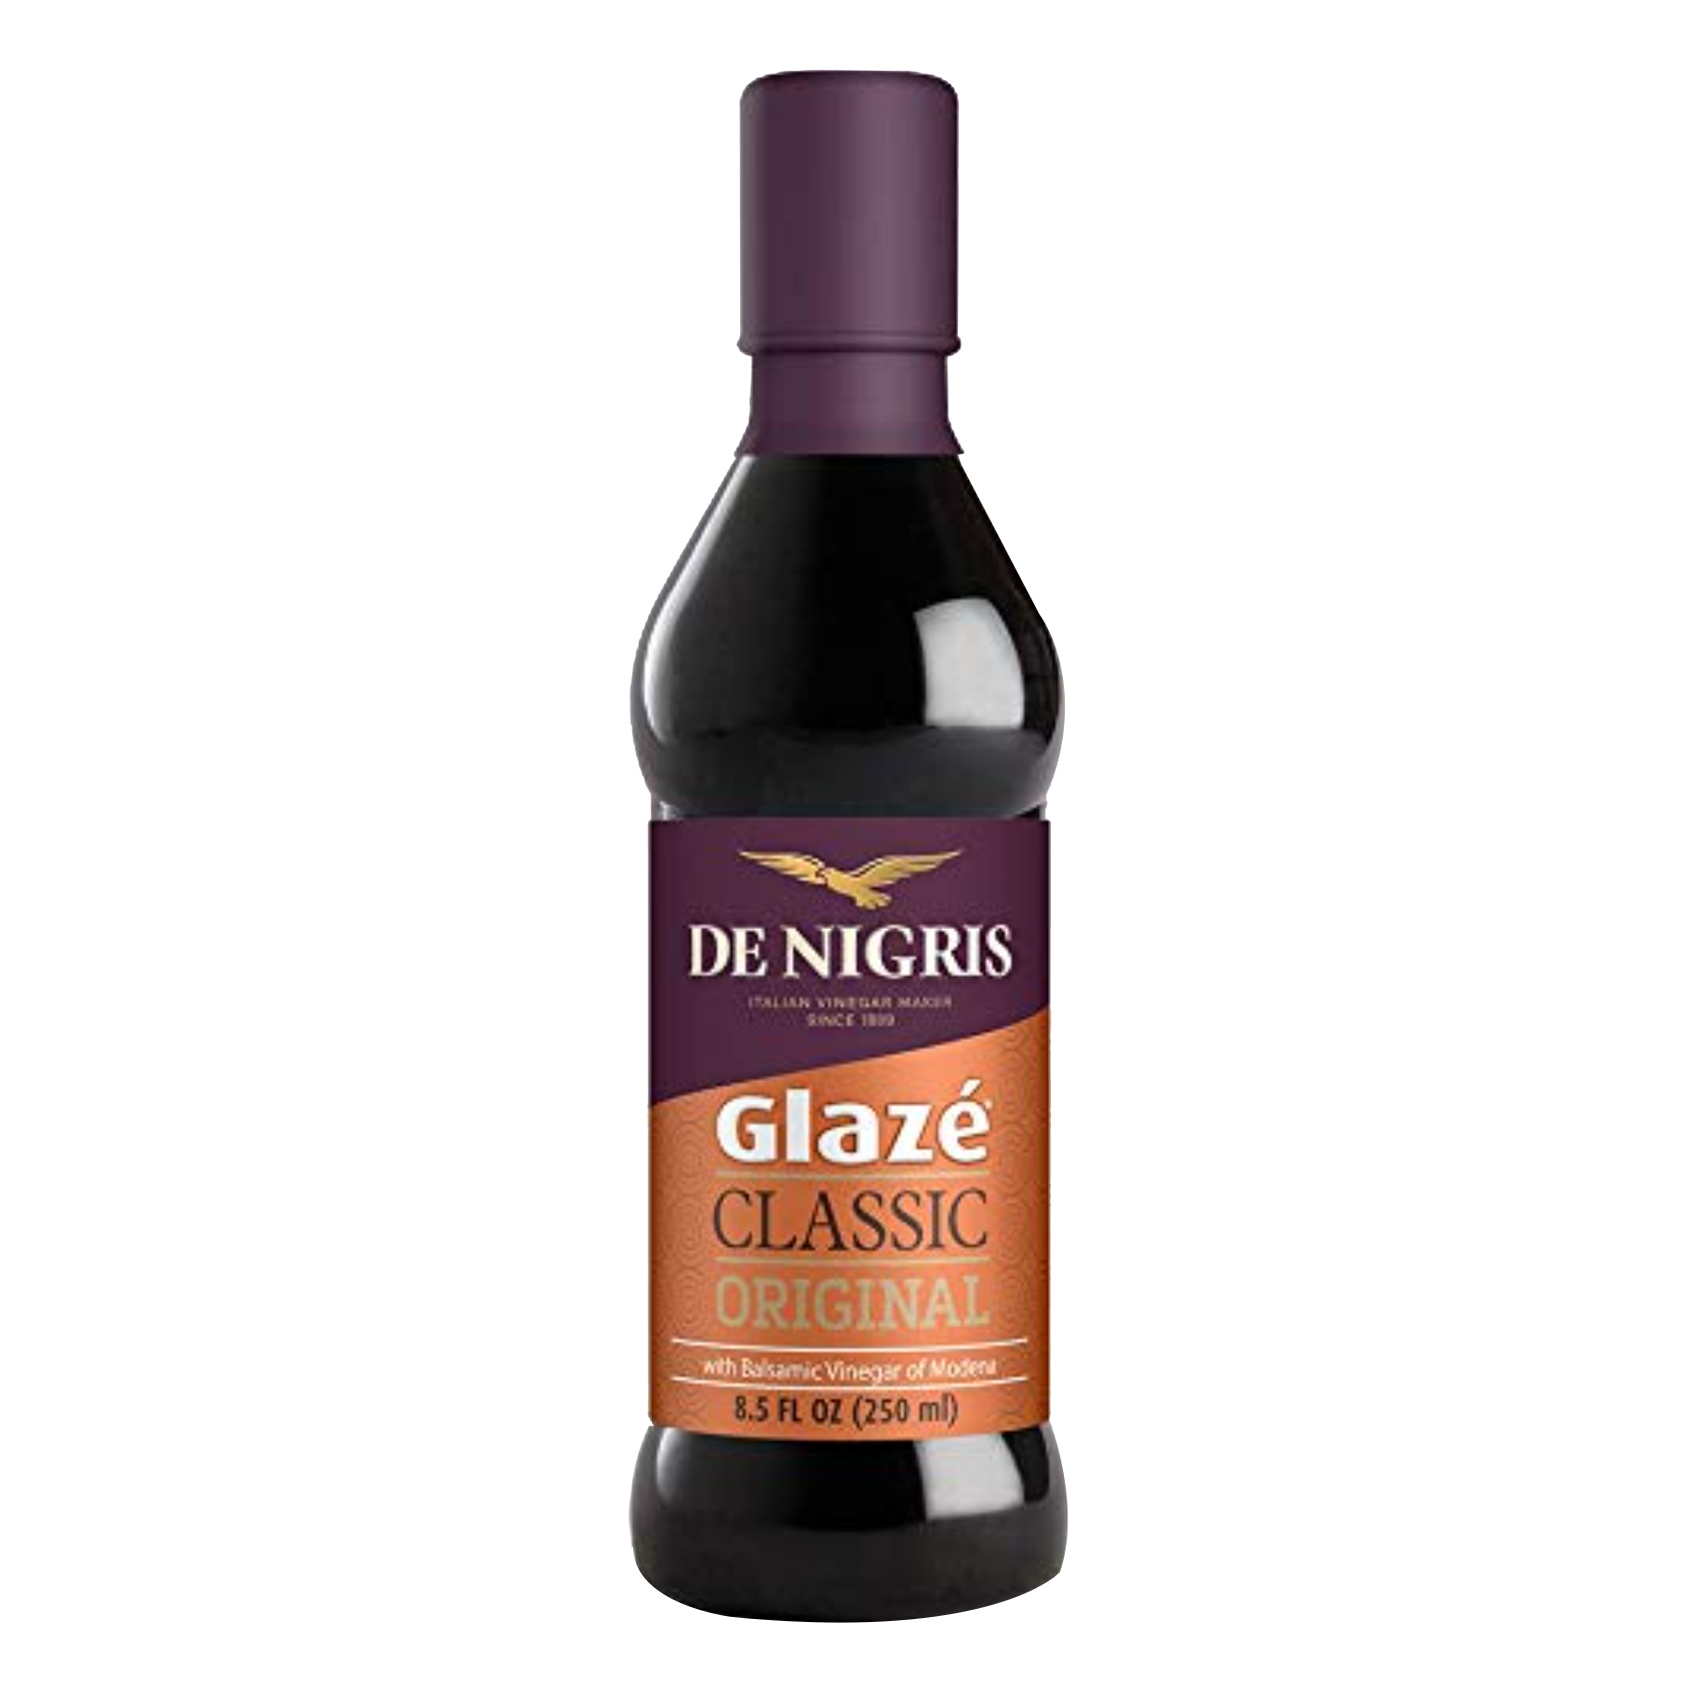 De Nigris Original Classic Glaze Balsamic Vinegar 250g